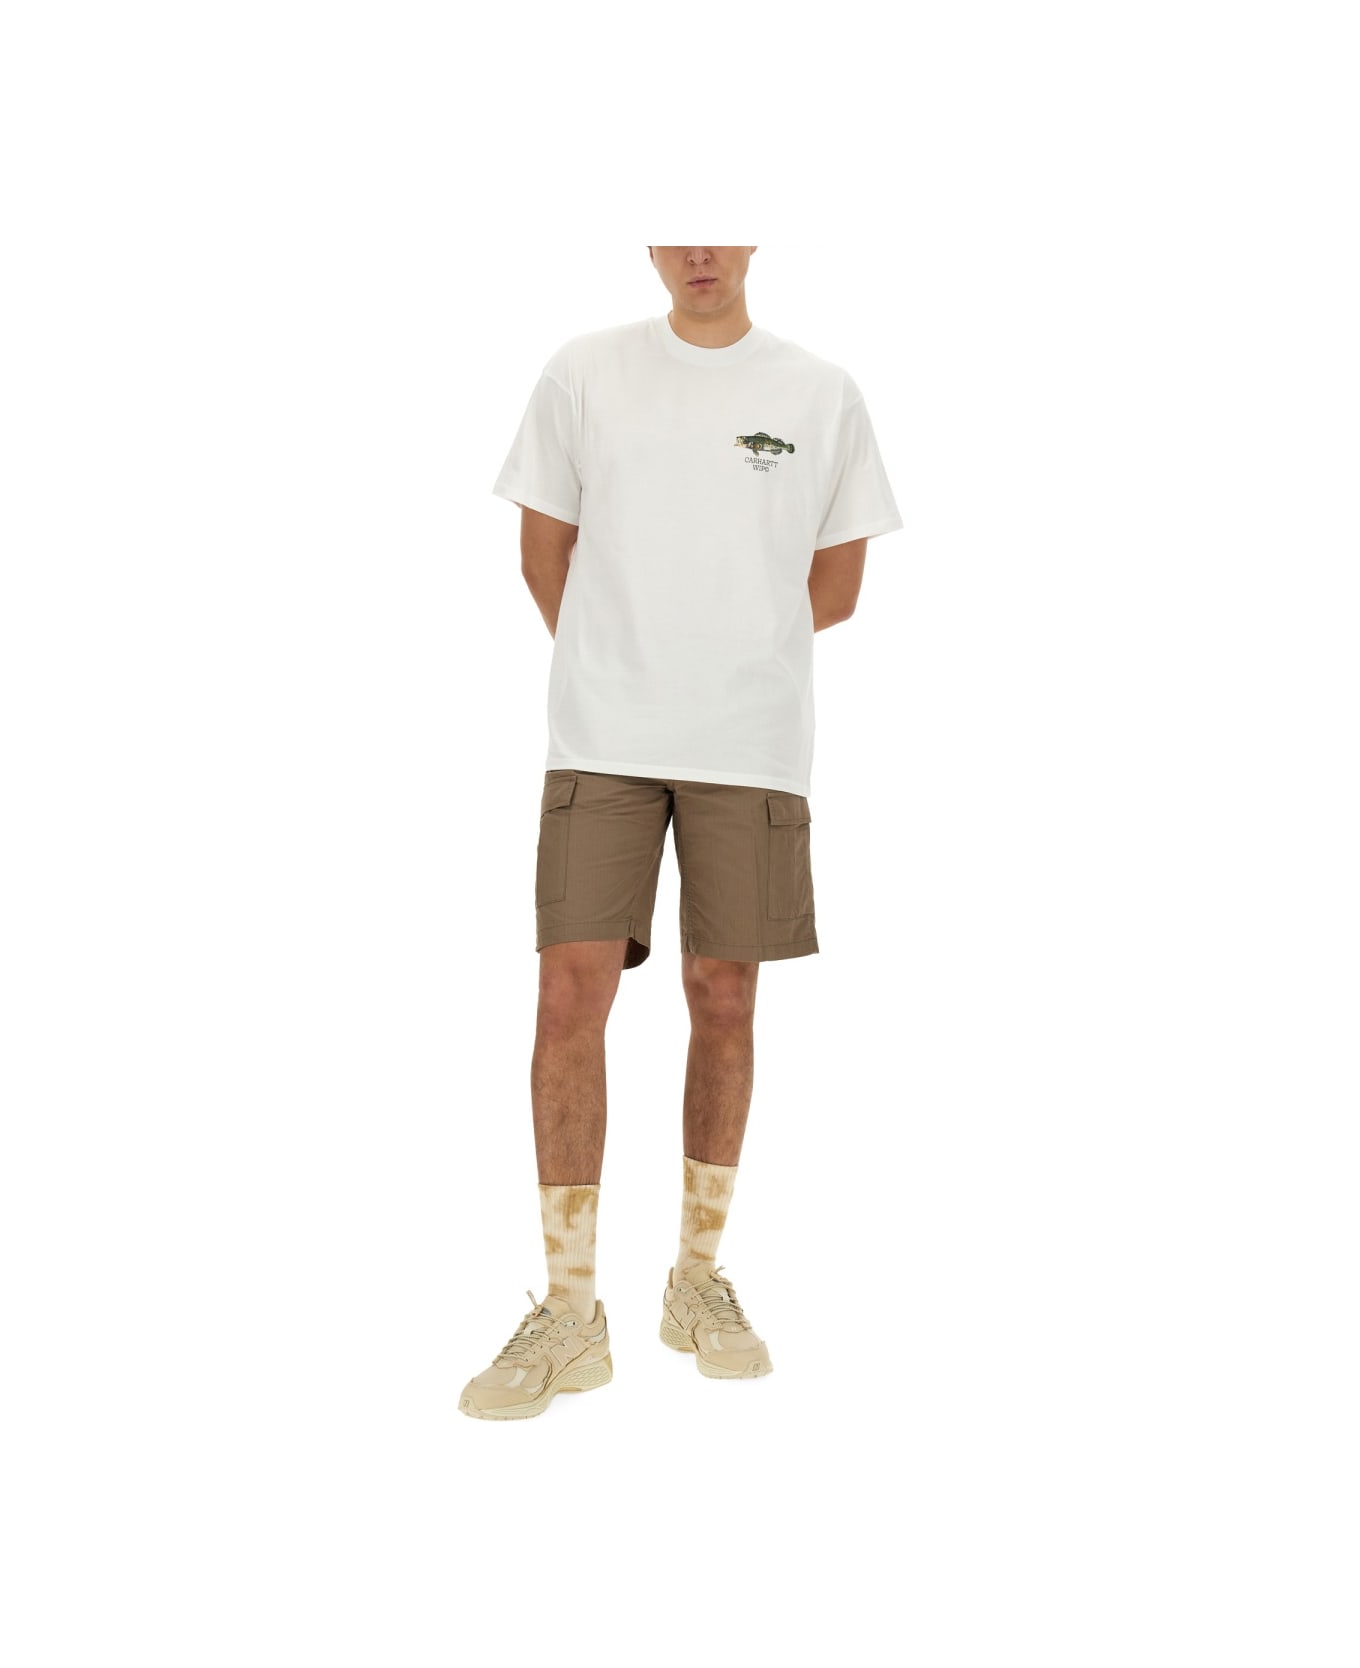 Carhartt WIP T-shirt 'fish' - White